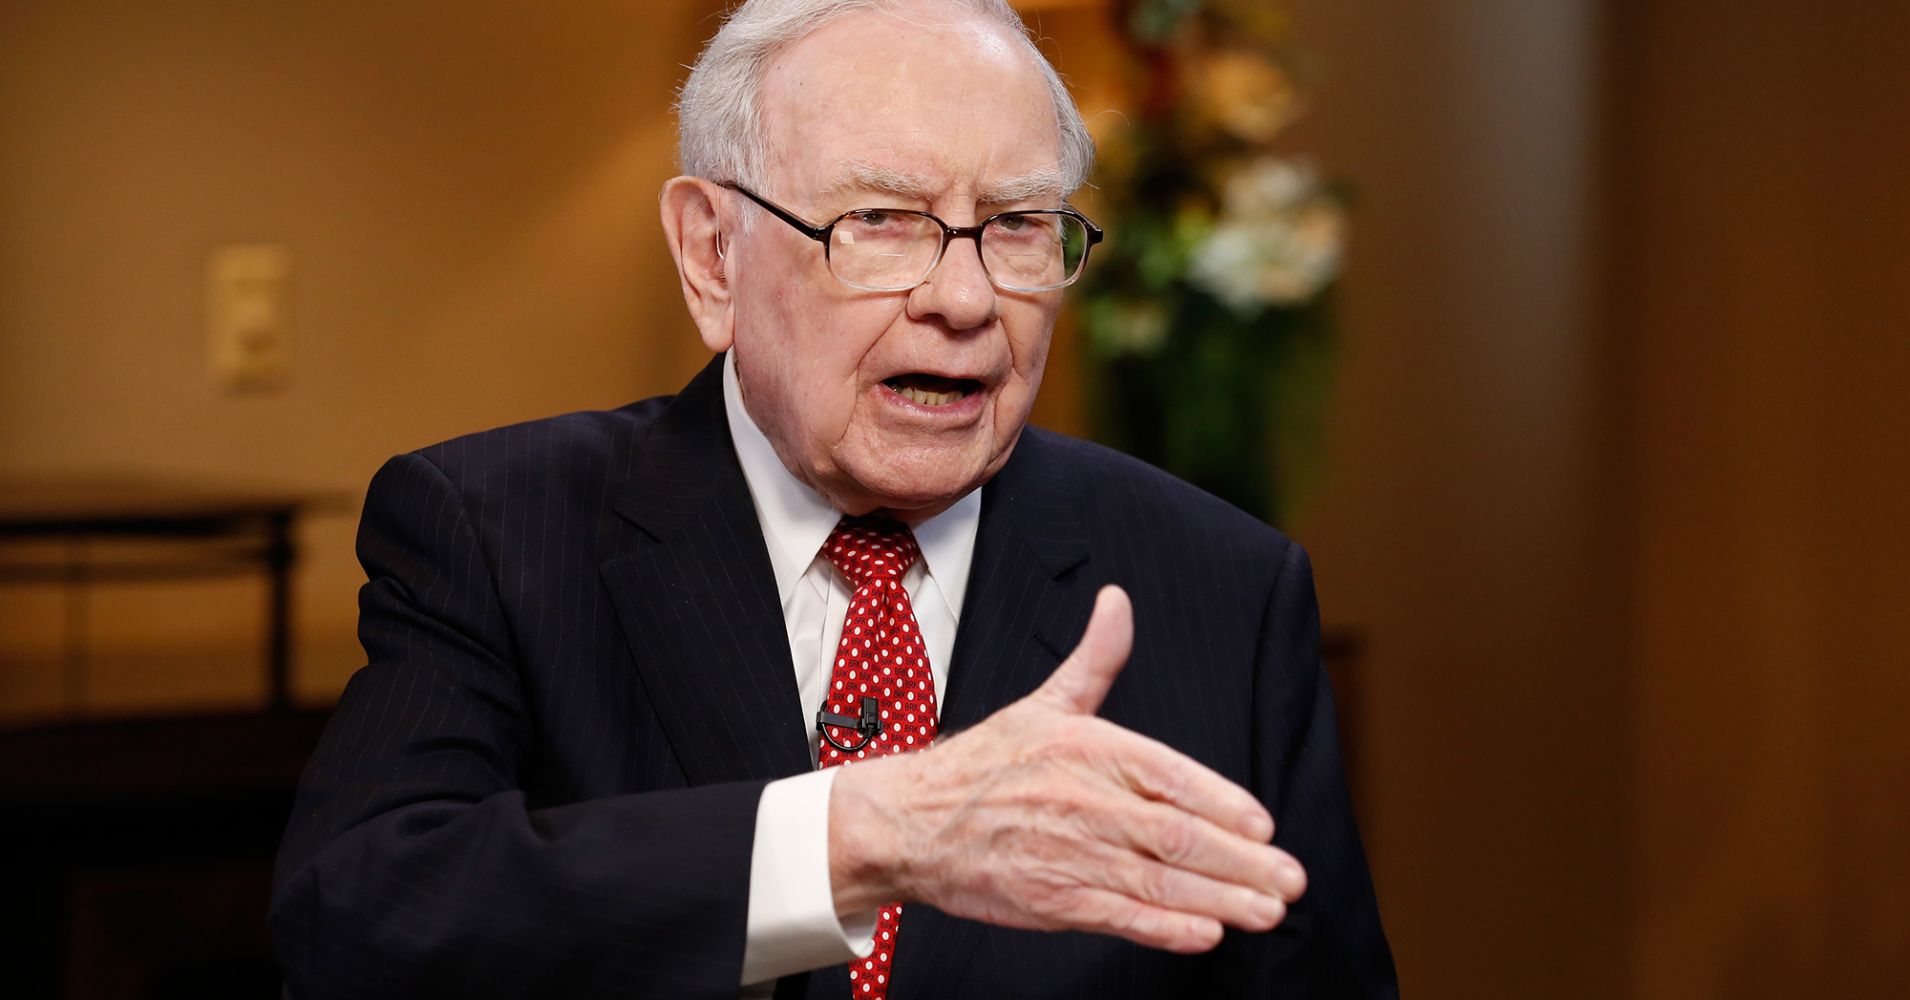 trieu-phu-tu-than (0)Huyền thoại đầu tư Warren Buffett, người sở hữu gần 100 tỷ USD thích mua xe giảm giá và sử dụng chúng lâu đến nỗi con gái ông phải nhắc rằng đã đến lúc đổi xe